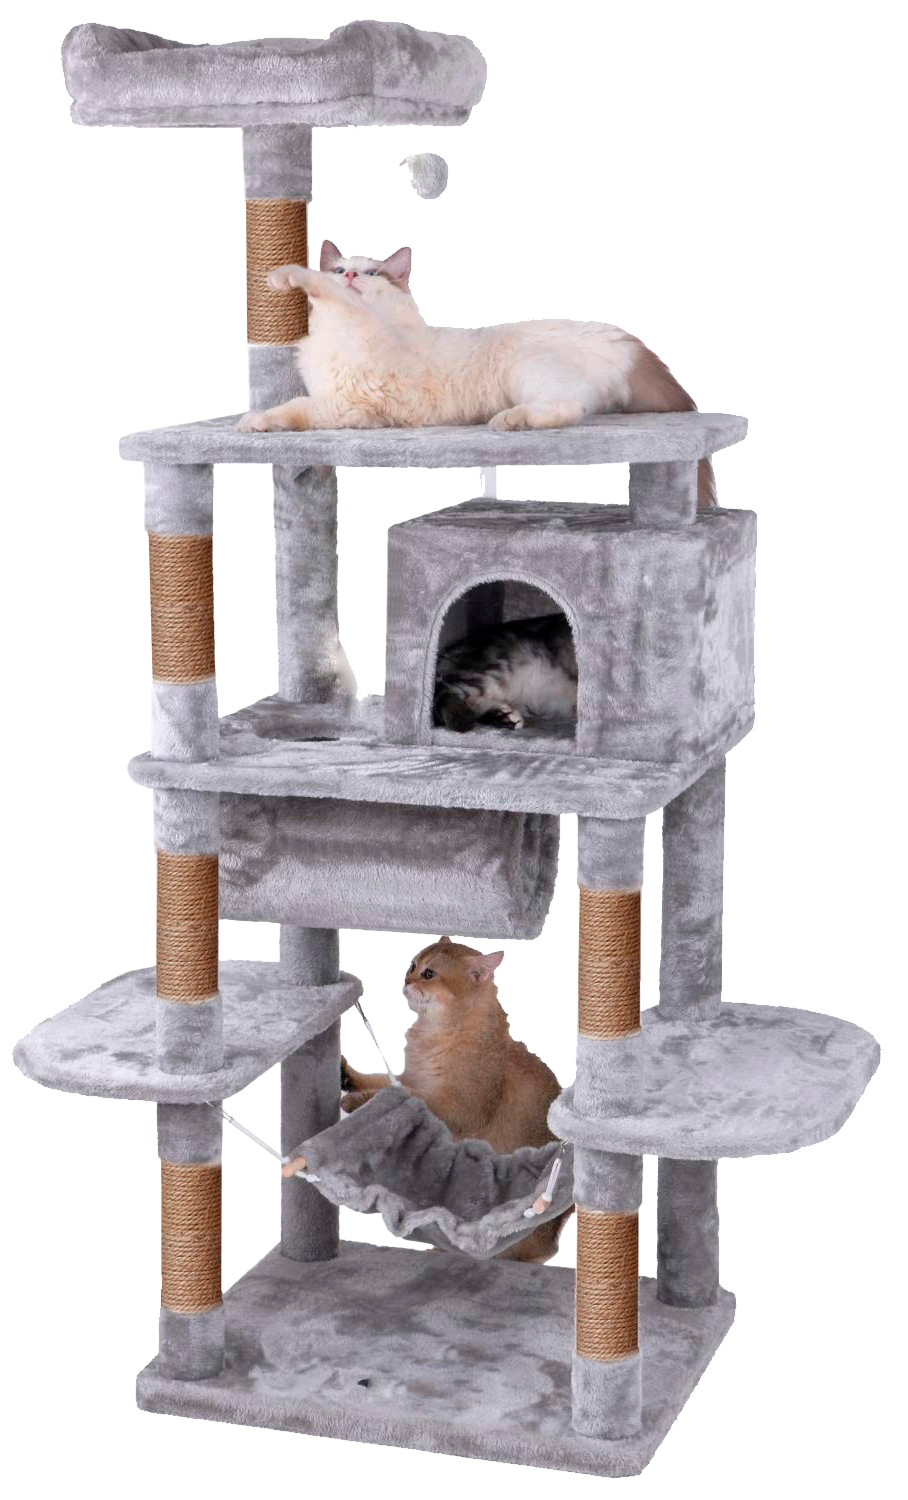 Игровой комплекс для кошек дом Pet БМФ Серый - фото 1